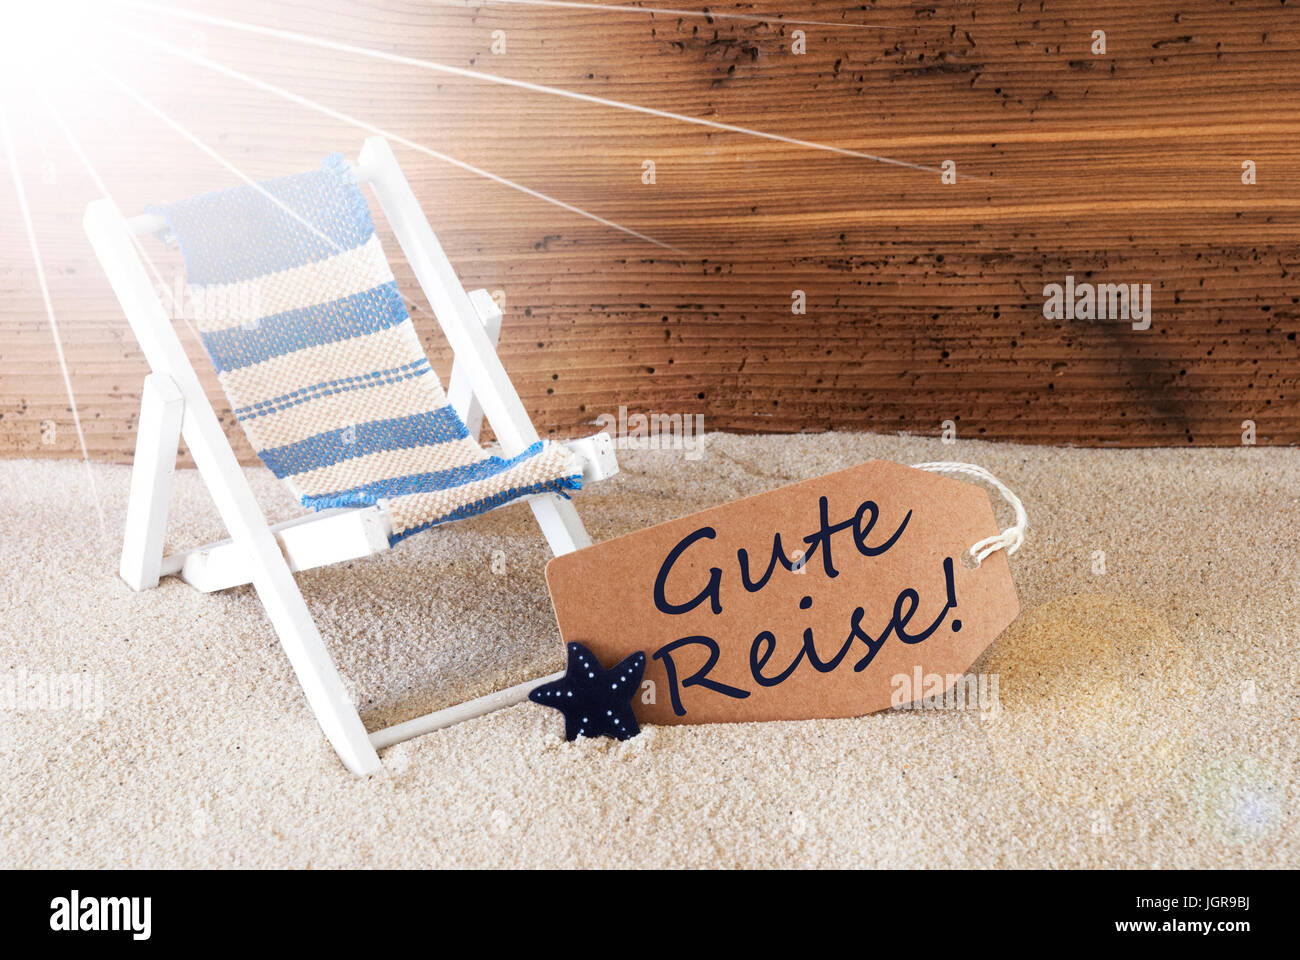 Etiqueta soleado de verano, gute Reise significa Buen viaje Foto de stock